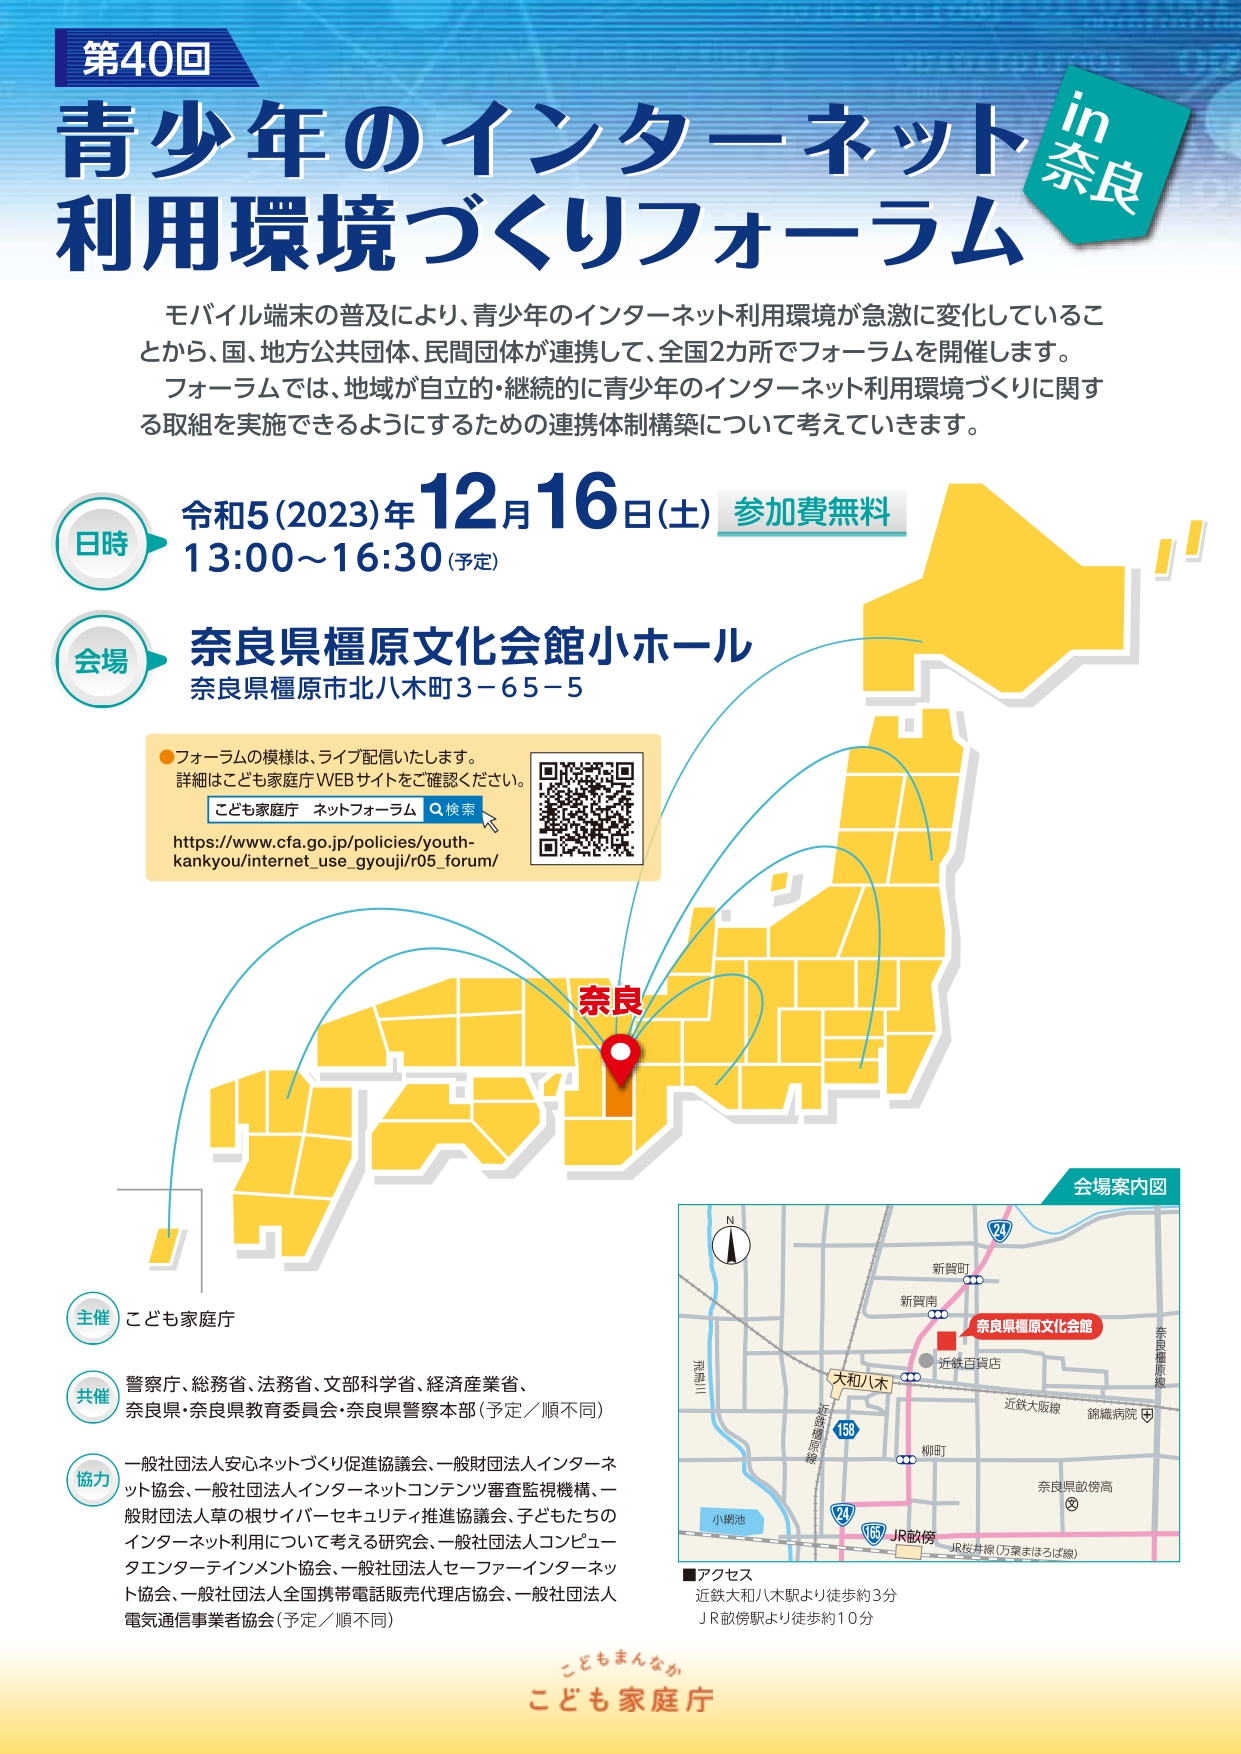 12月16日(土)開催「第40回 青少年のインターネット利用環境づくりフォーラム in 奈良」の参加応募受付（無料）を開始　こども家庭庁